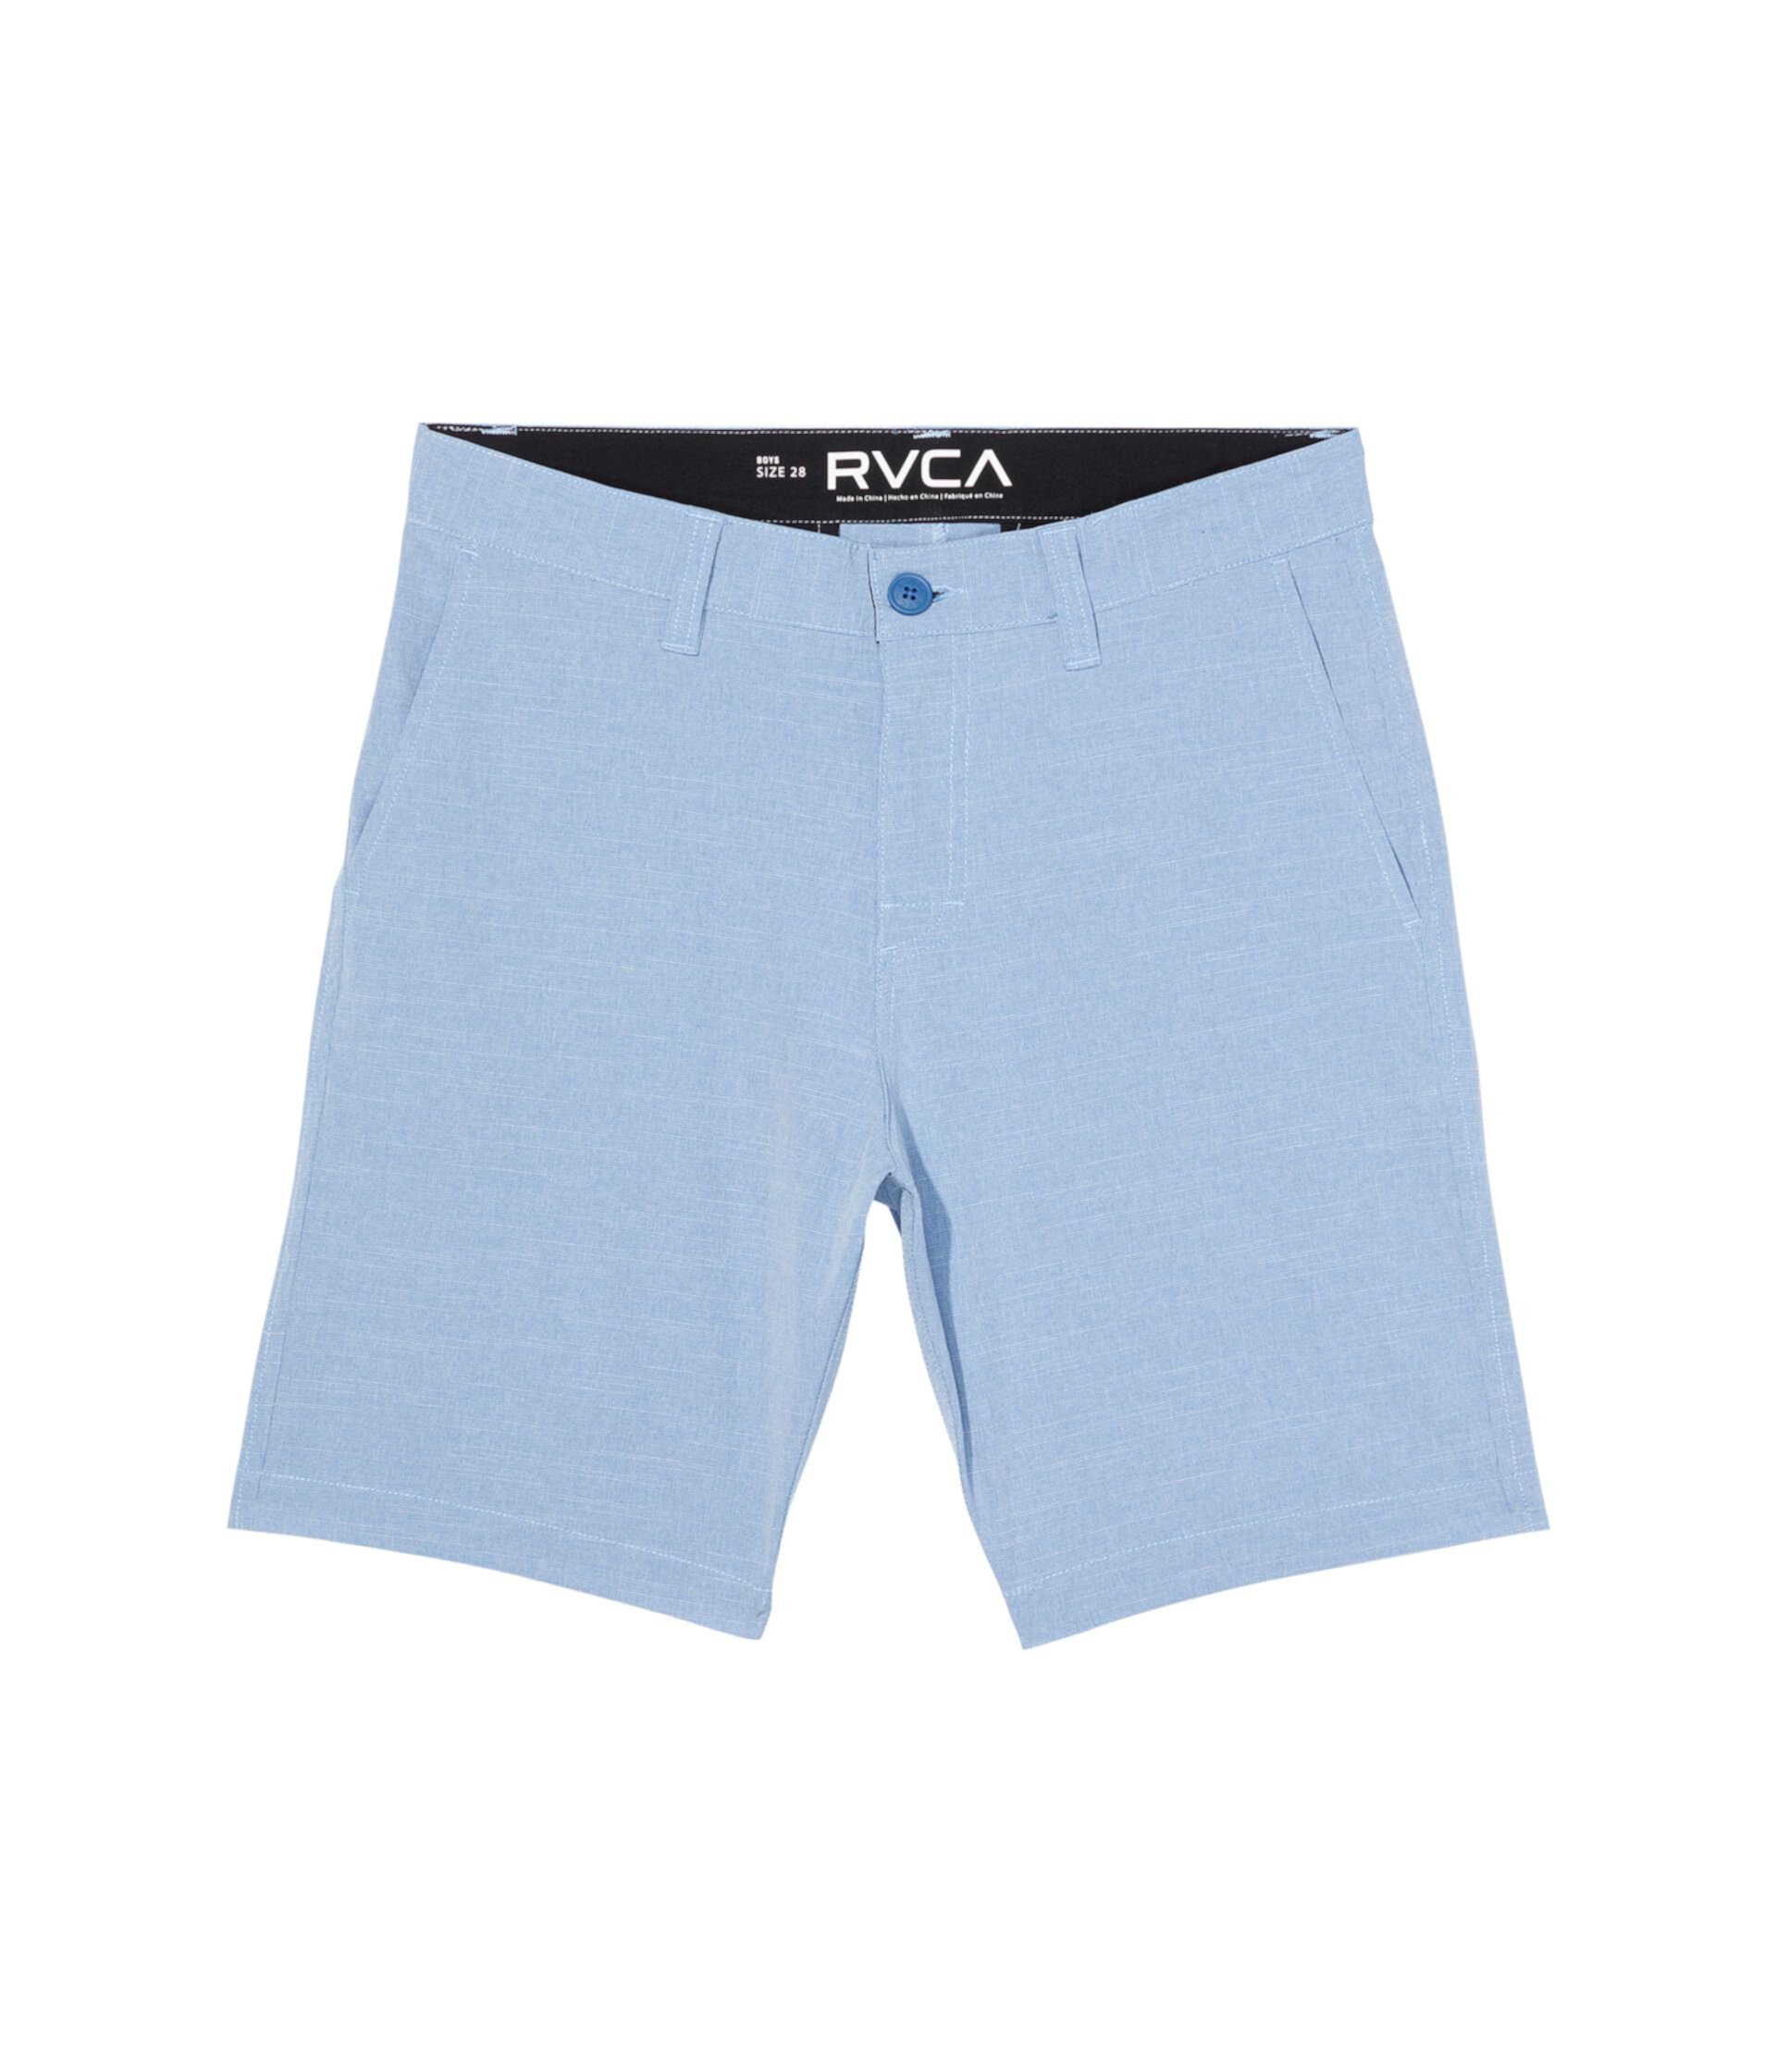 Гибридные шорты Balance (для больших детей) RVCA Kids